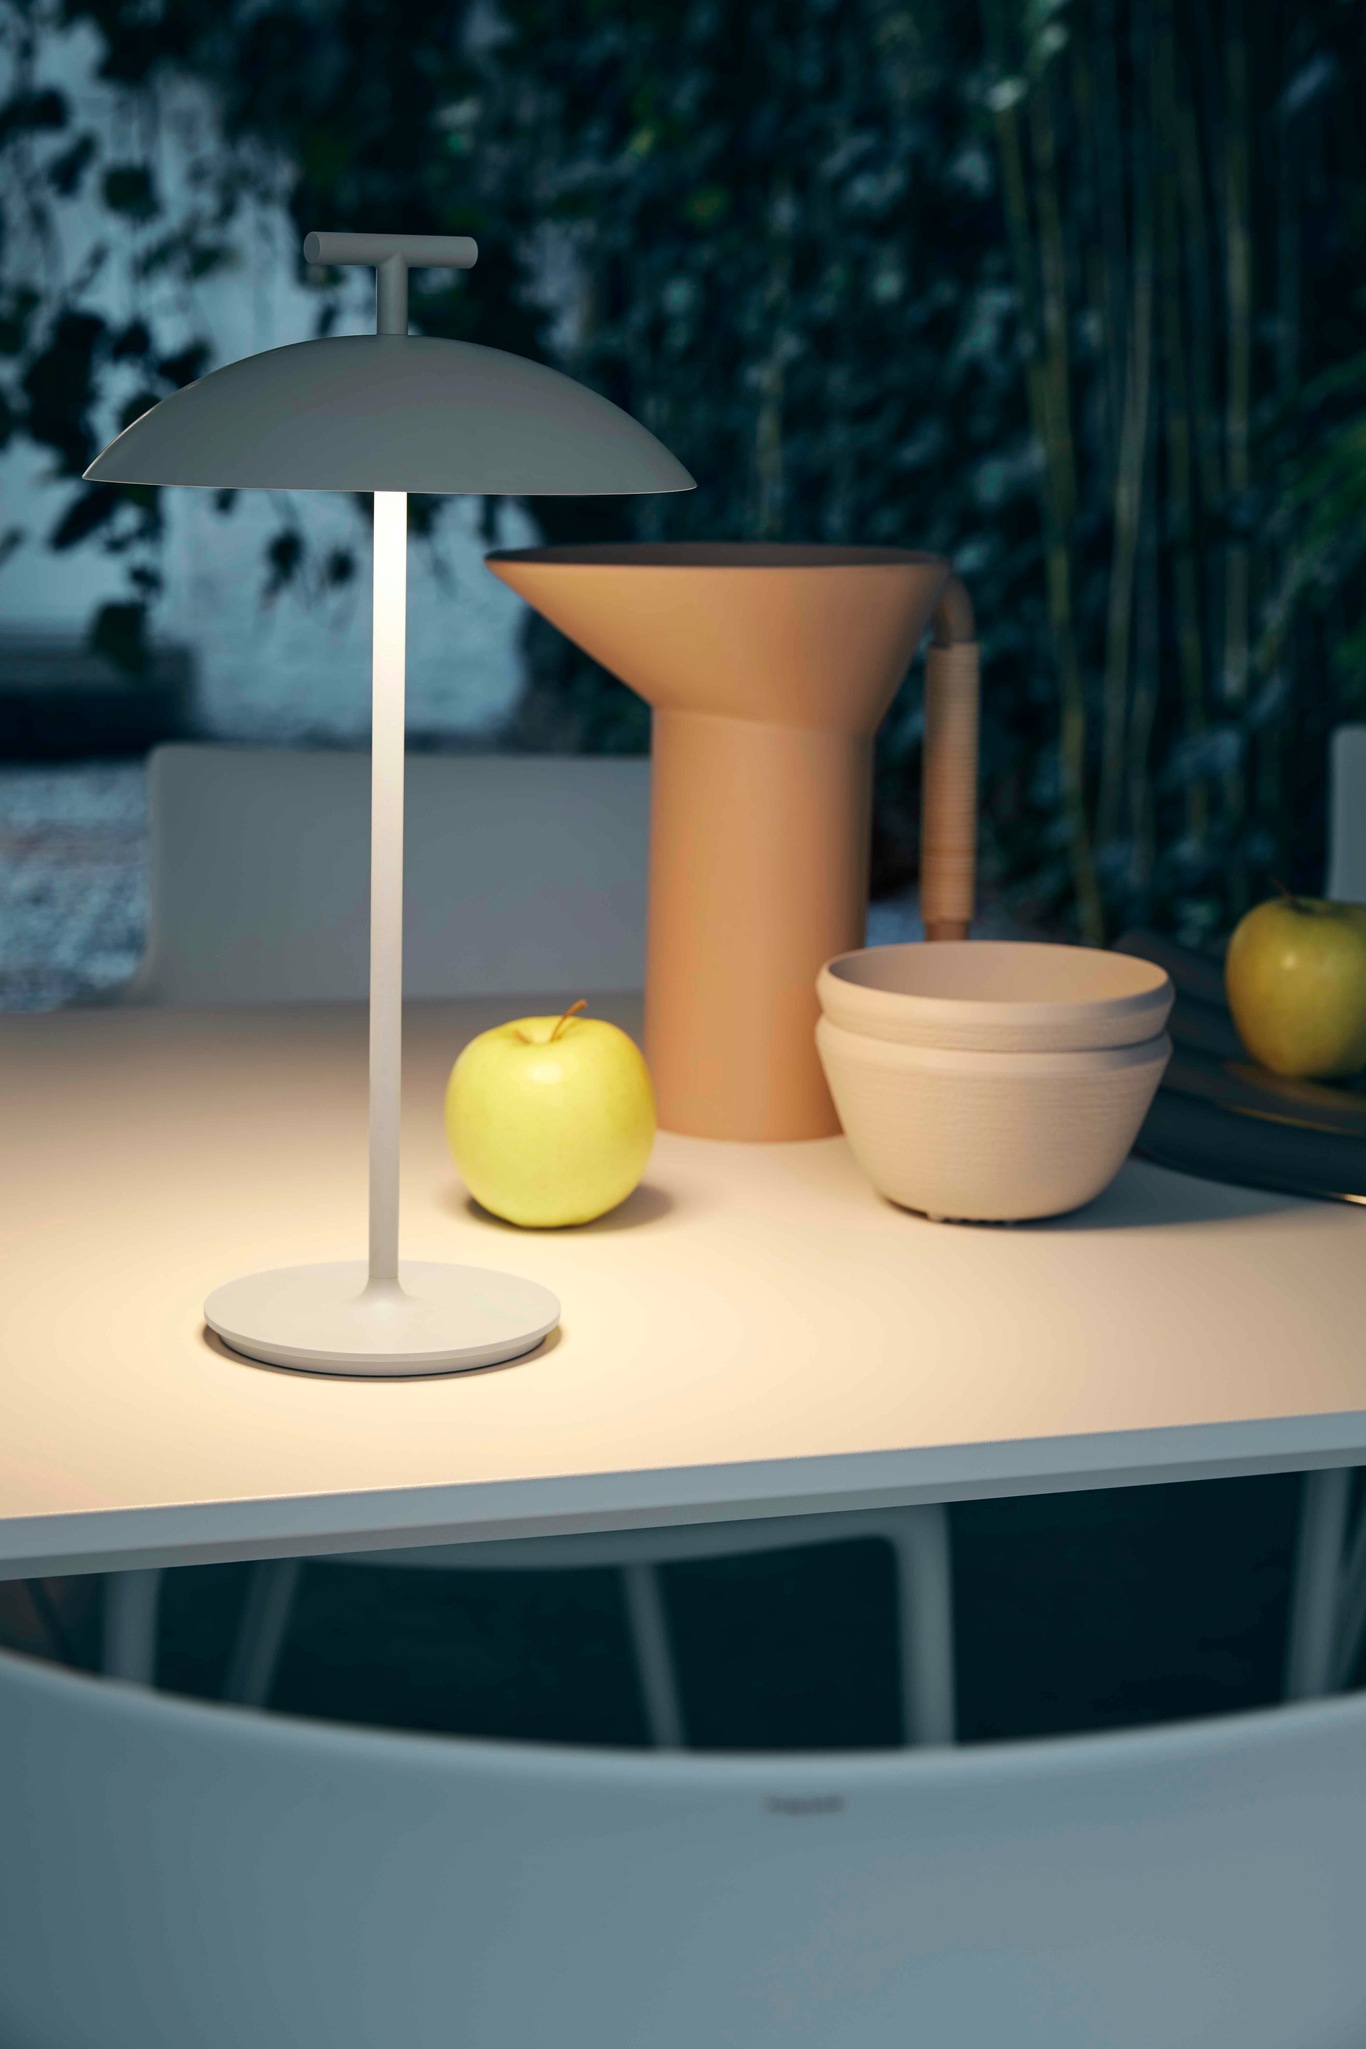 Pipistrello Mini Table Lamp Portable, Brown - Martinelli Luce @ RoyalDesign